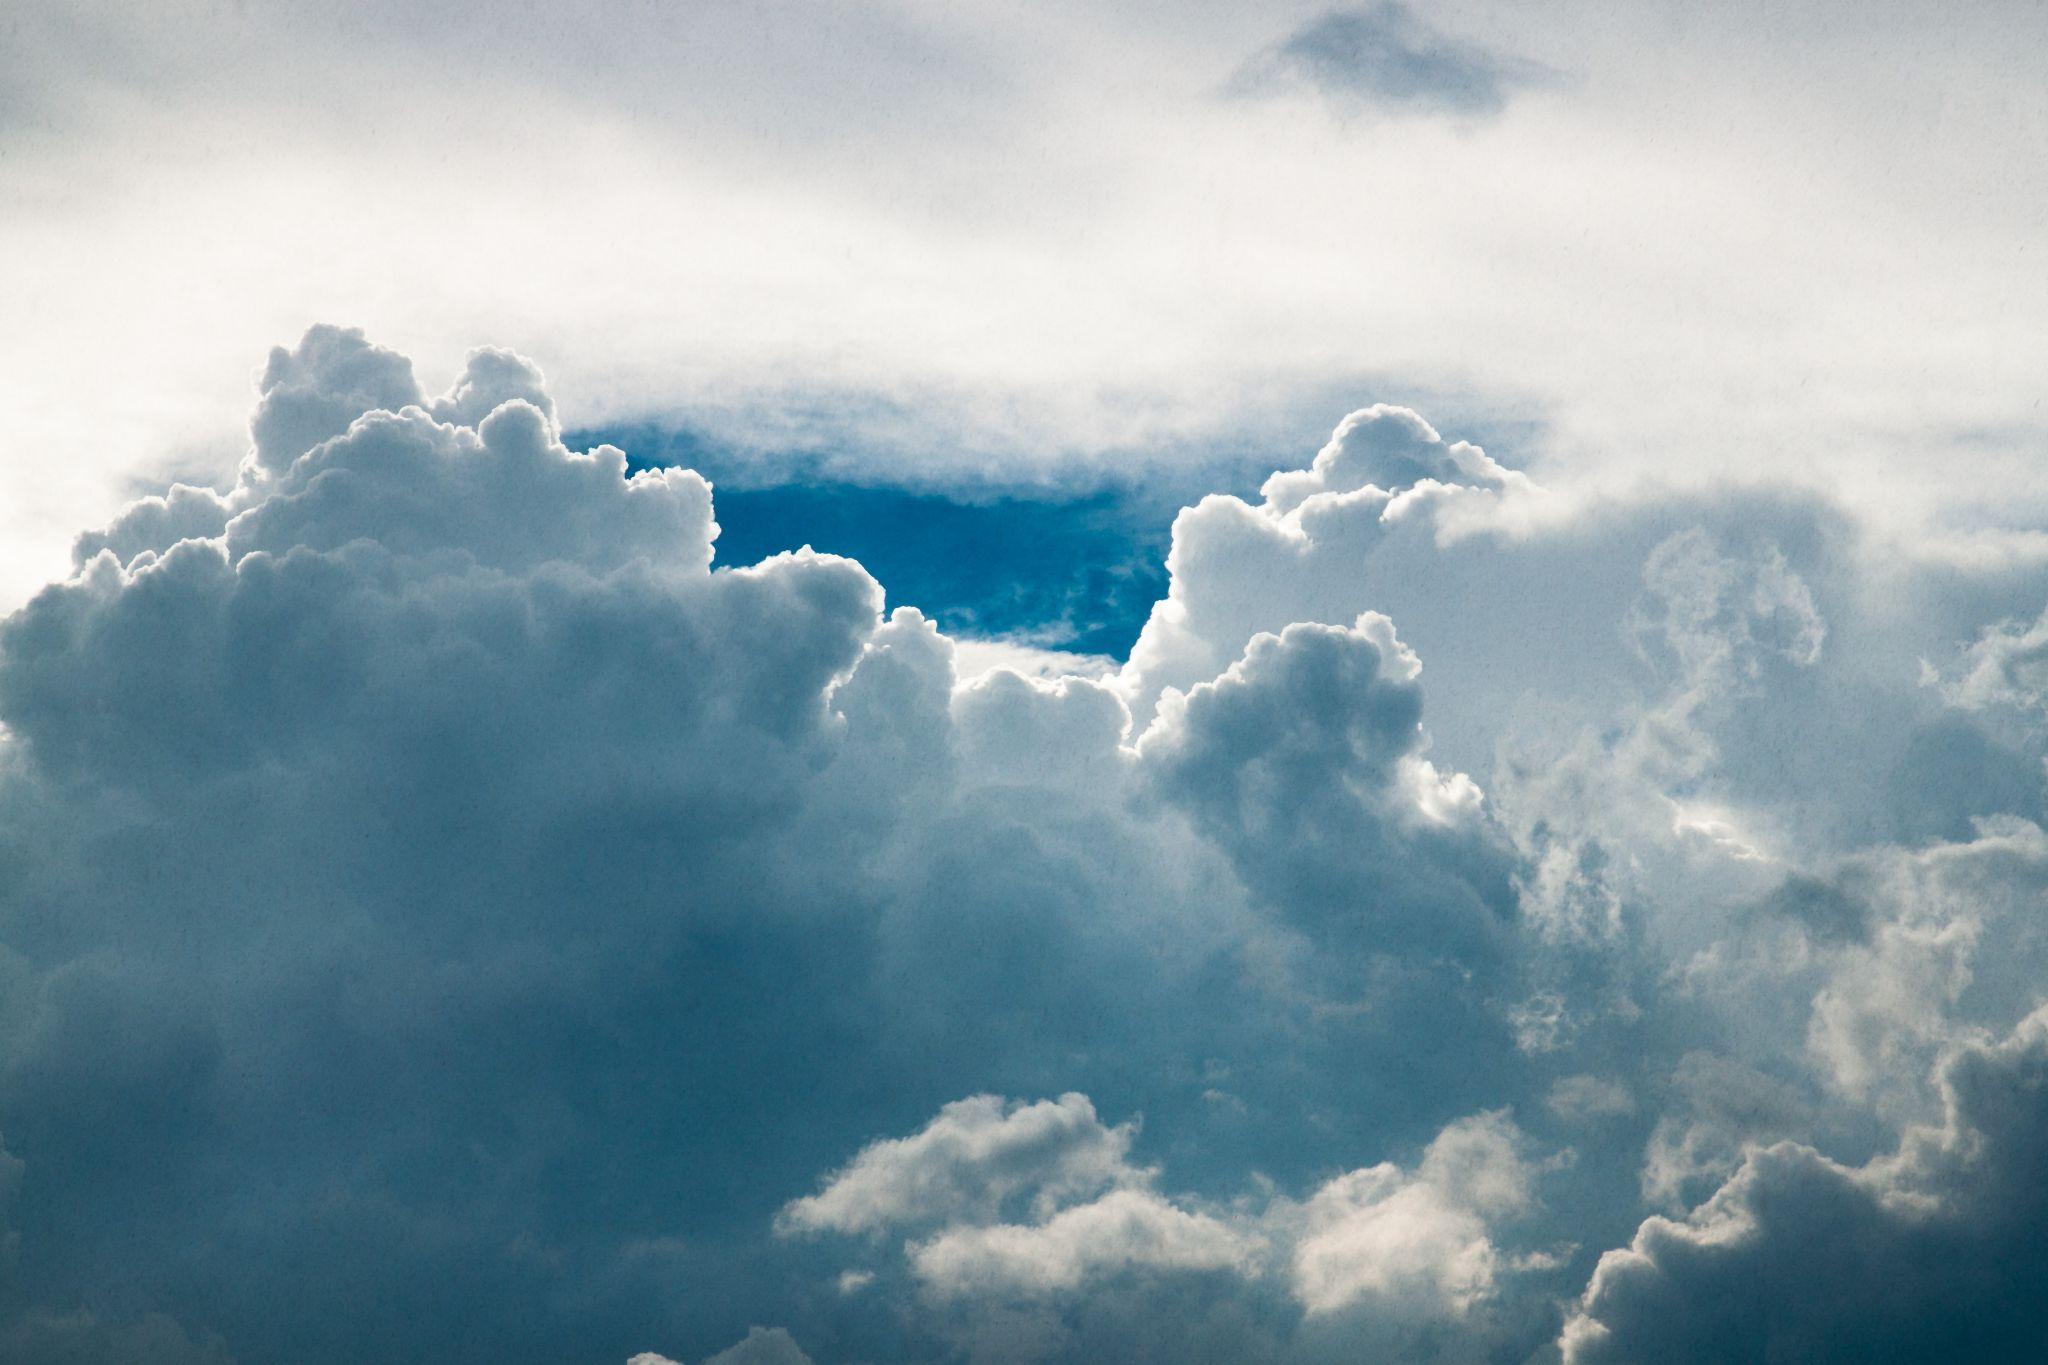 图片素材 : 天空, 大气层, 白天, 积云, 雷雨, 云形式, 气象现象, 云山, 束云彩, 地球大气 2000x1333 ...